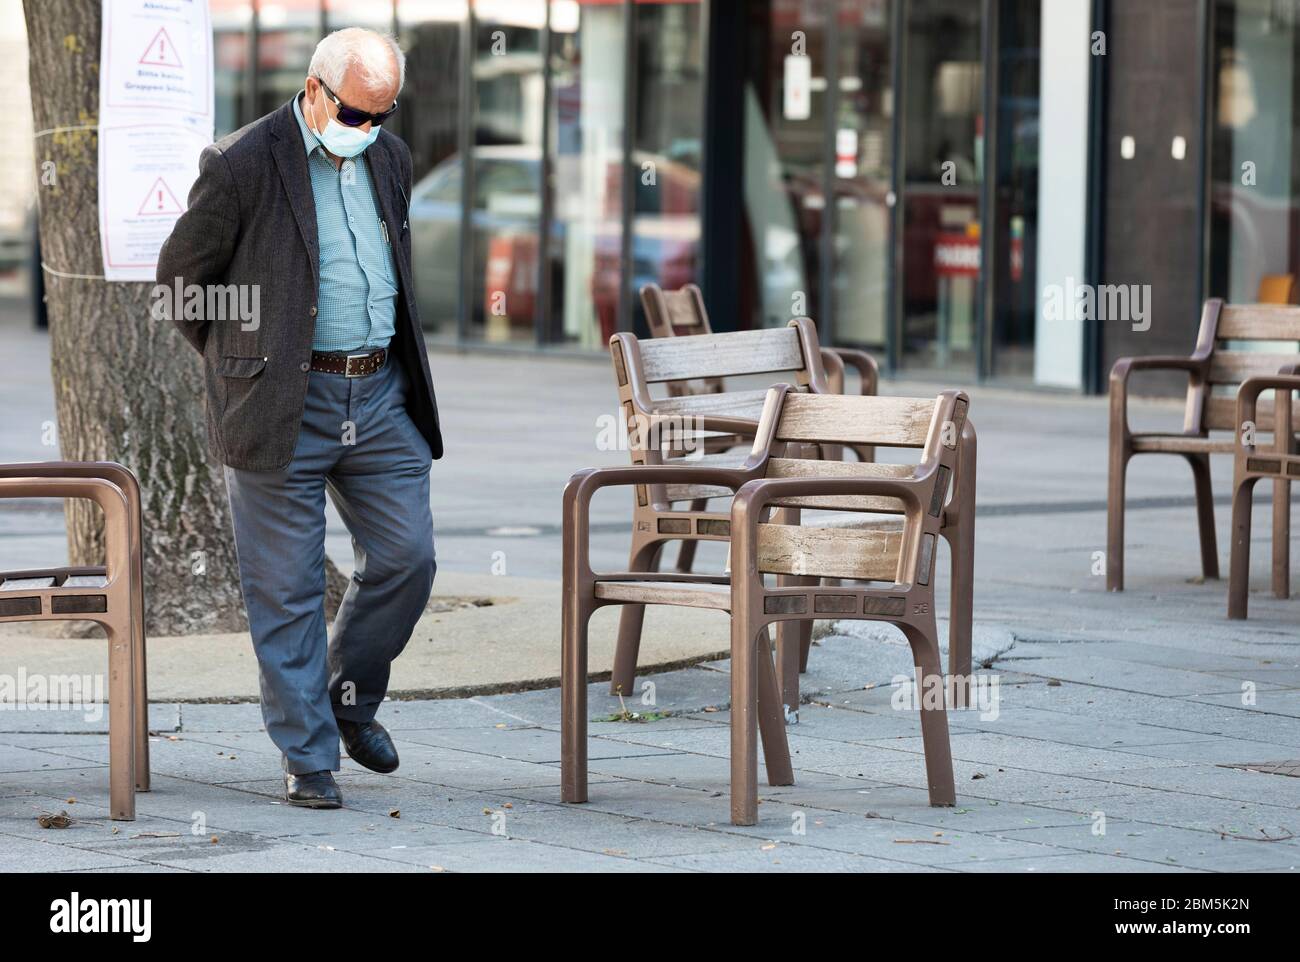 anciano con máscara de protección contra coronavirus caminando sobre una plaza con sillas vacías Foto de stock